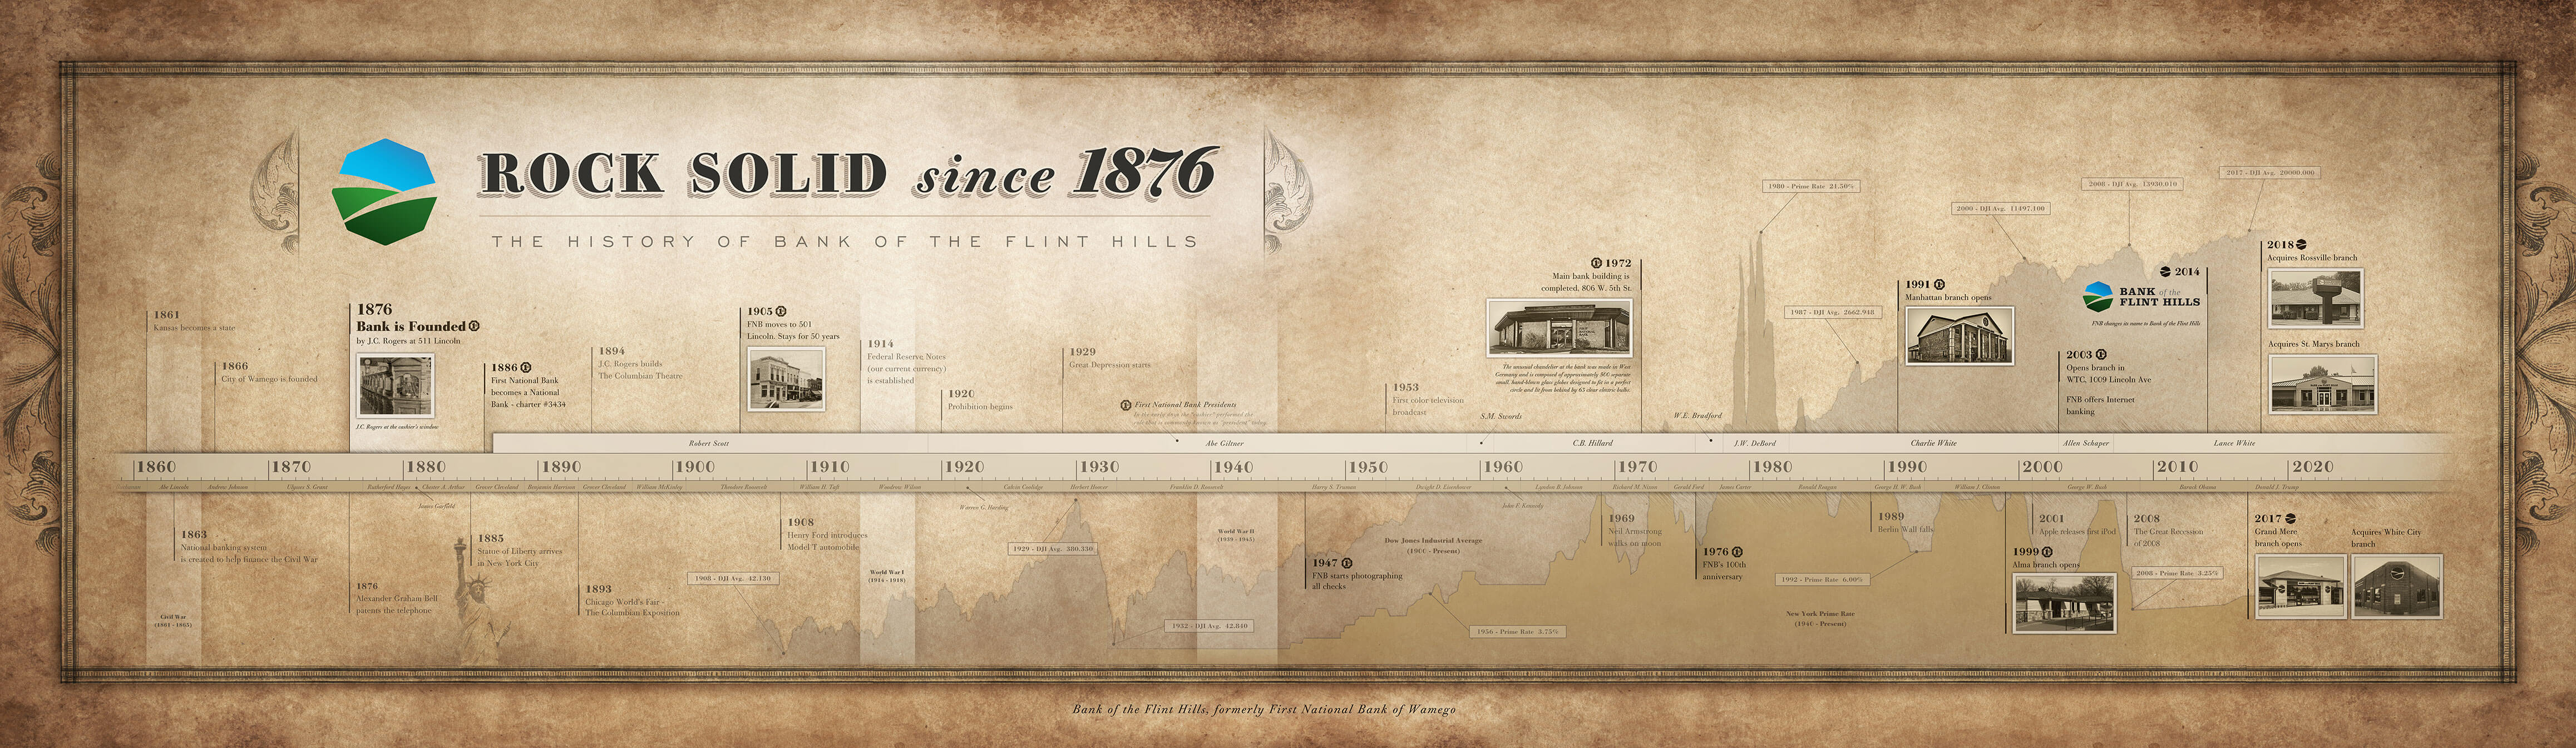 Bank of the Flint Hills Timeline